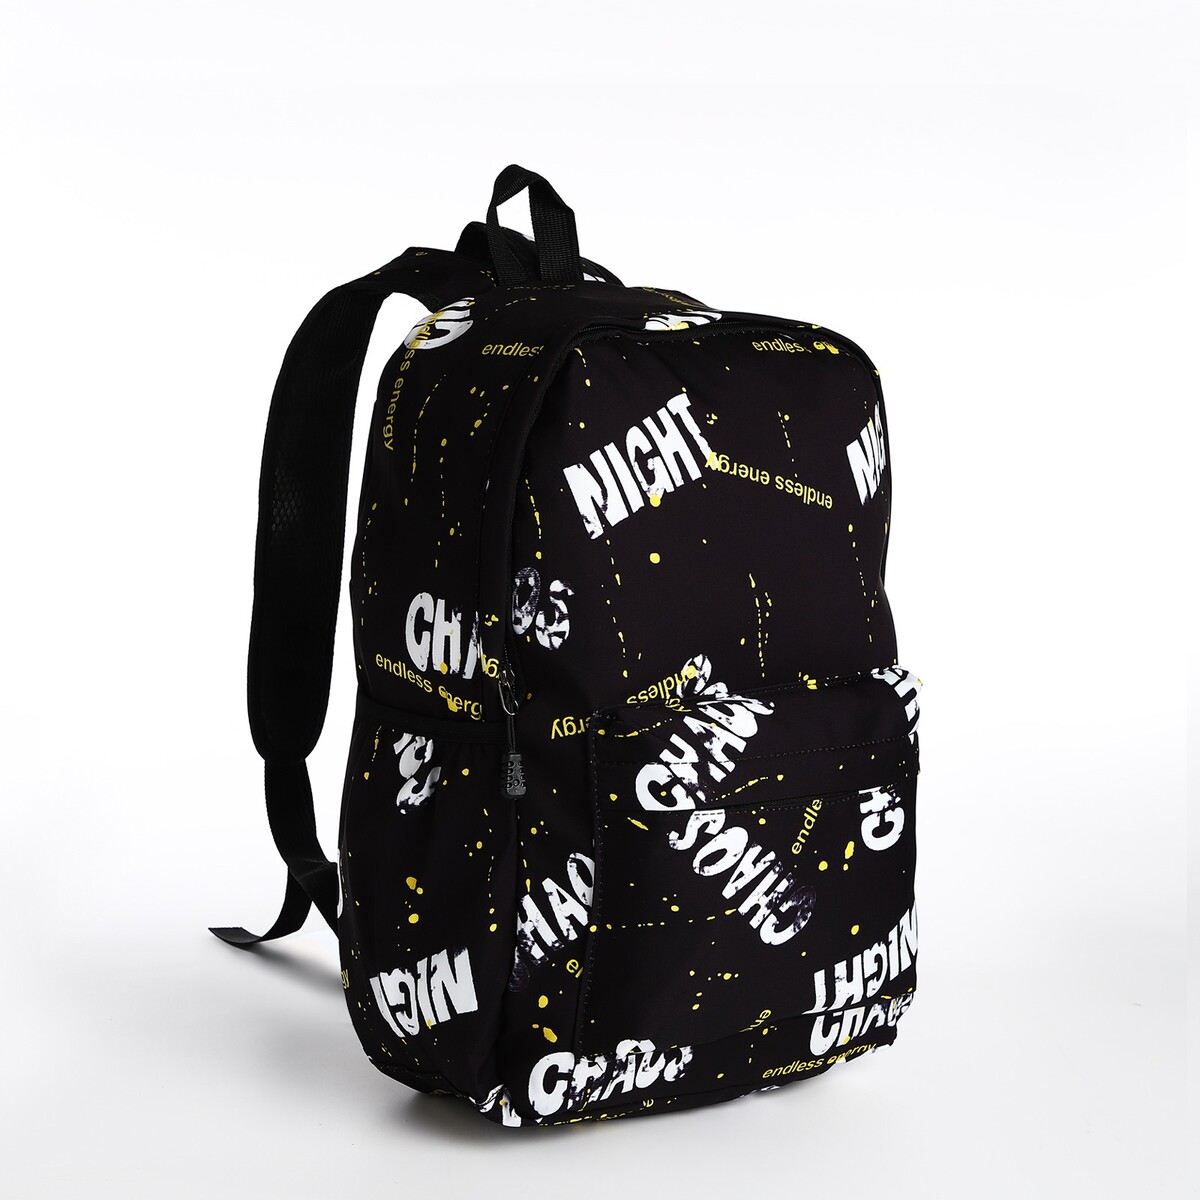 Рюкзак молодежный из текстиля на молнии, 3 кармана, цвет черный/желтый